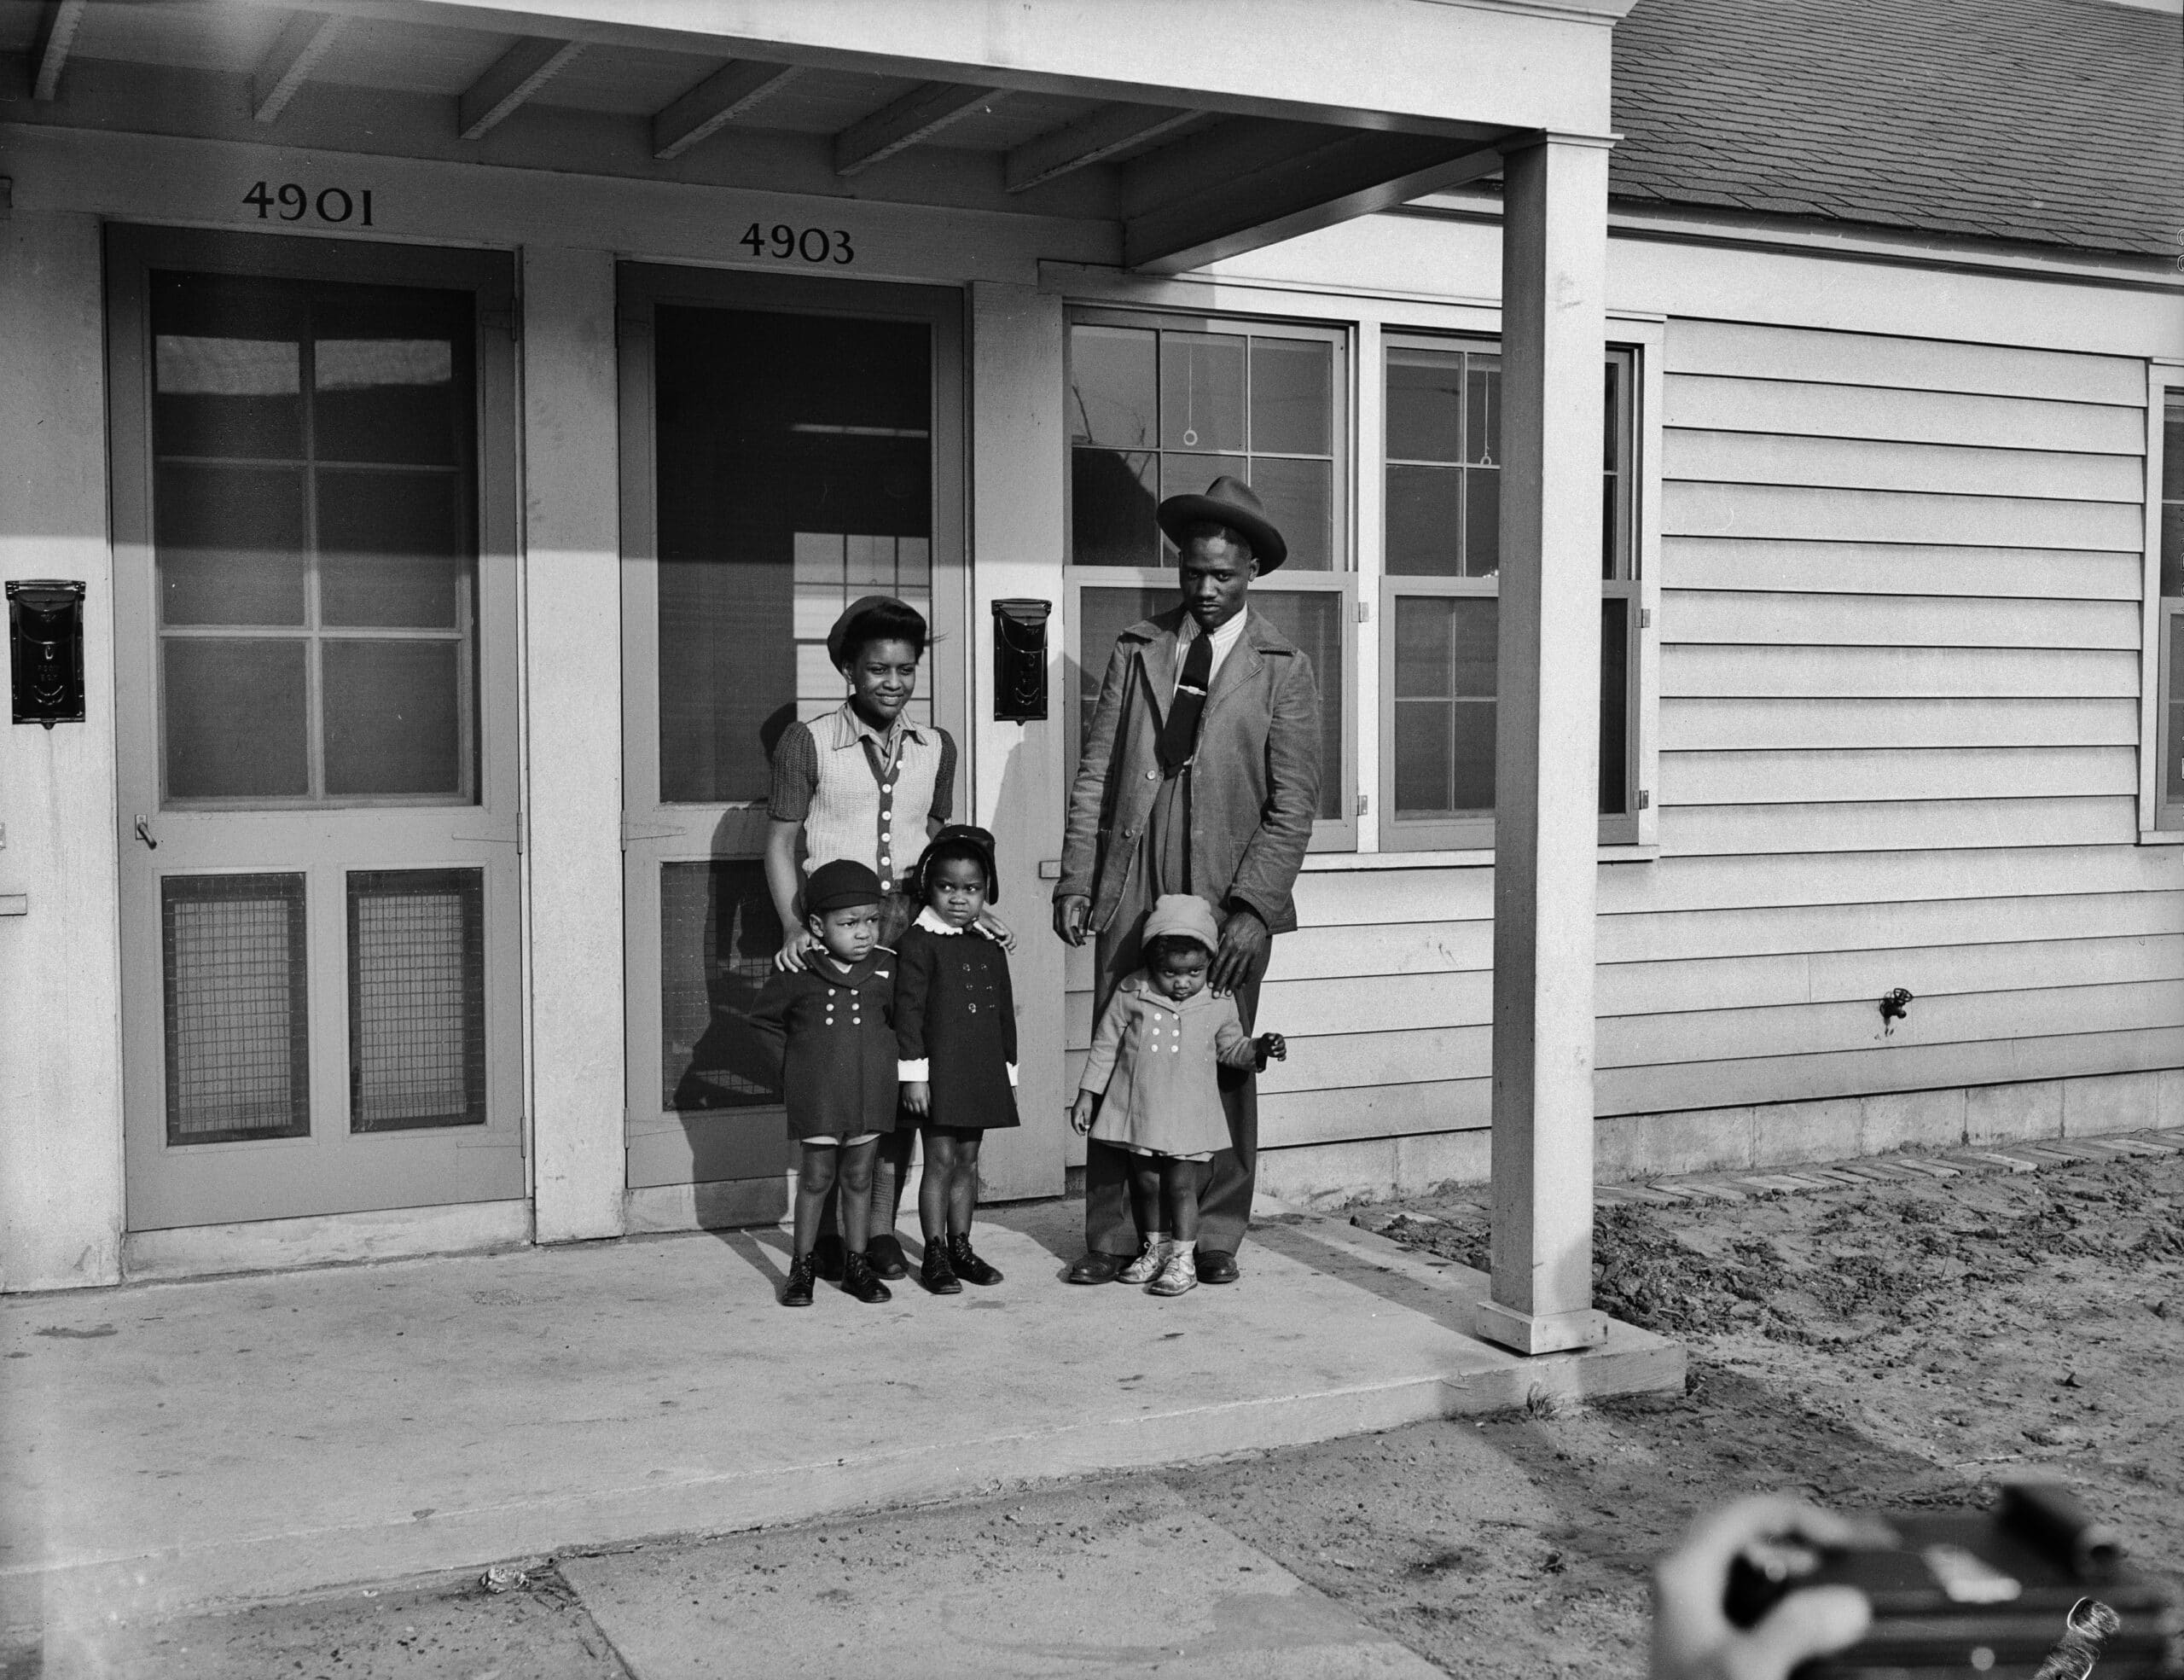  Familiefoto, Detroit, Michigan, 1942 (Credit: Arthur S. Siegel)